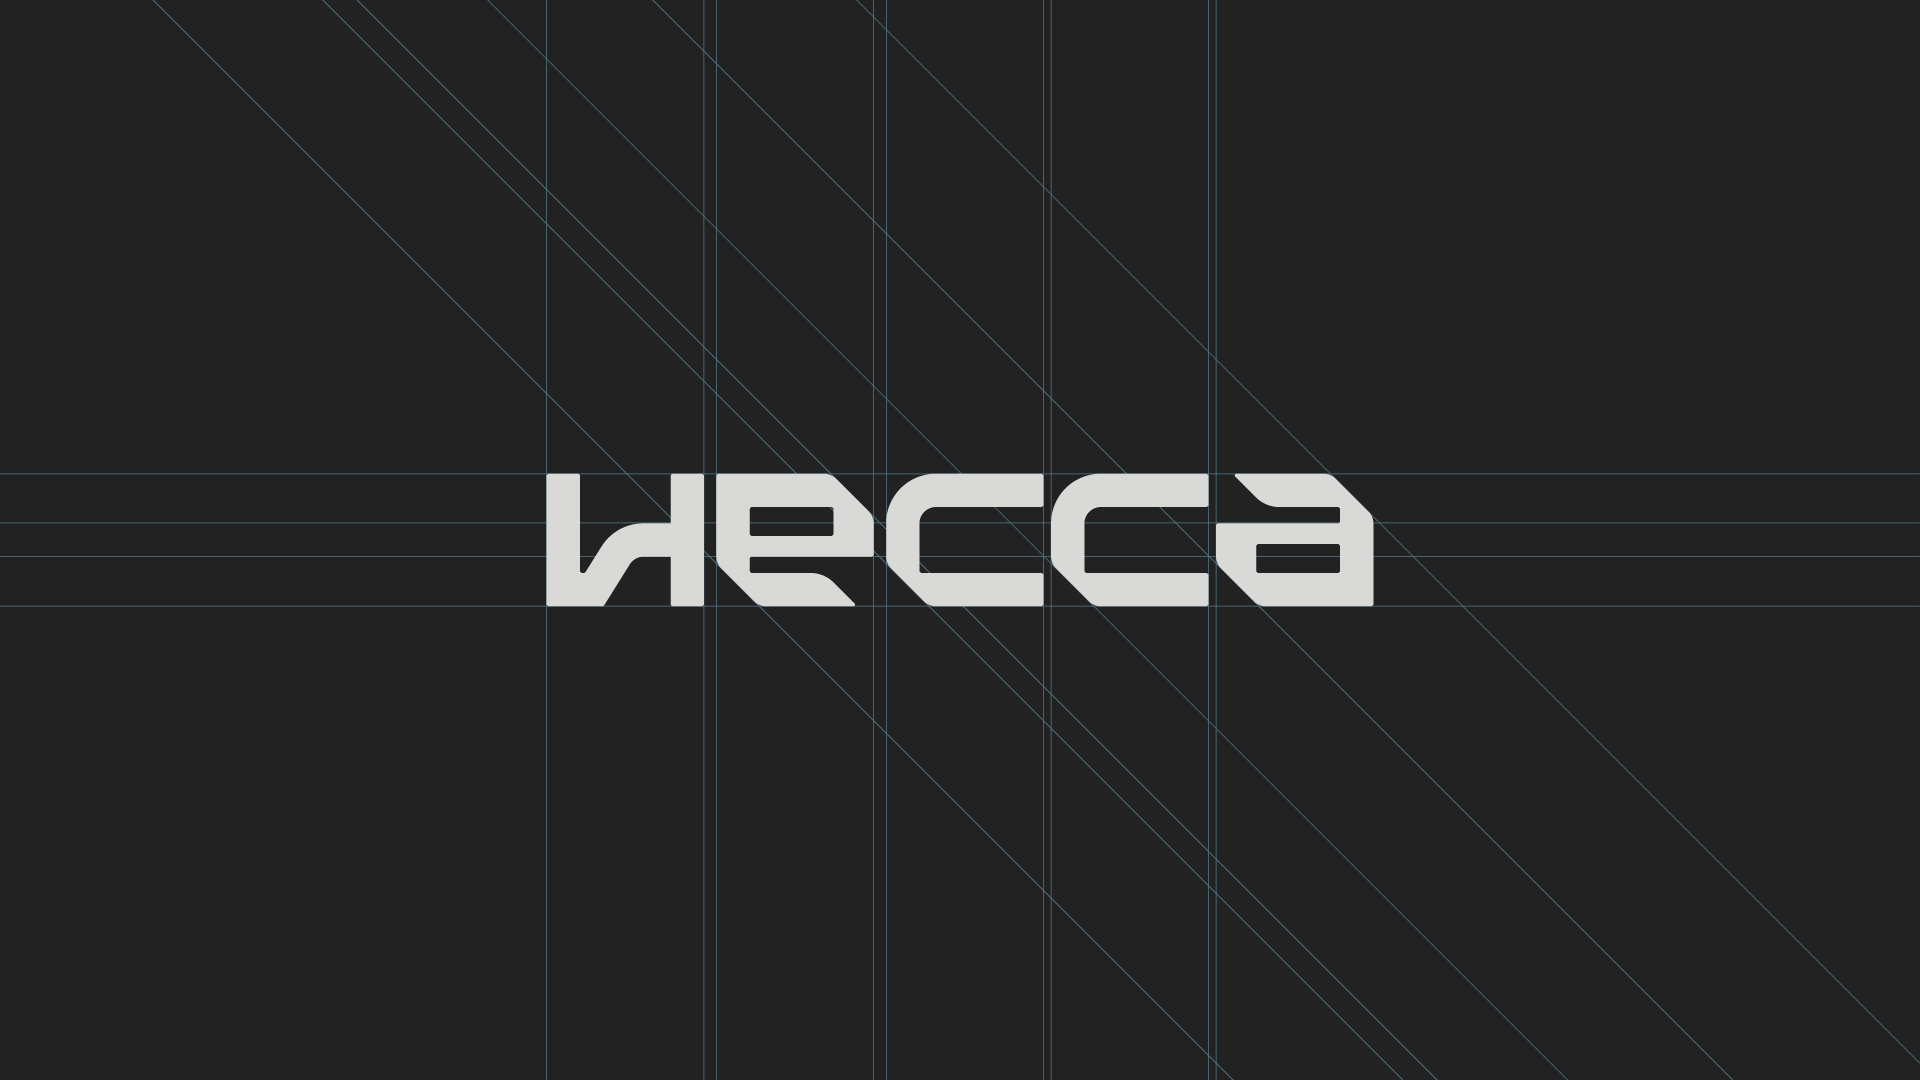 Hecca Water & Sanitary Engineering